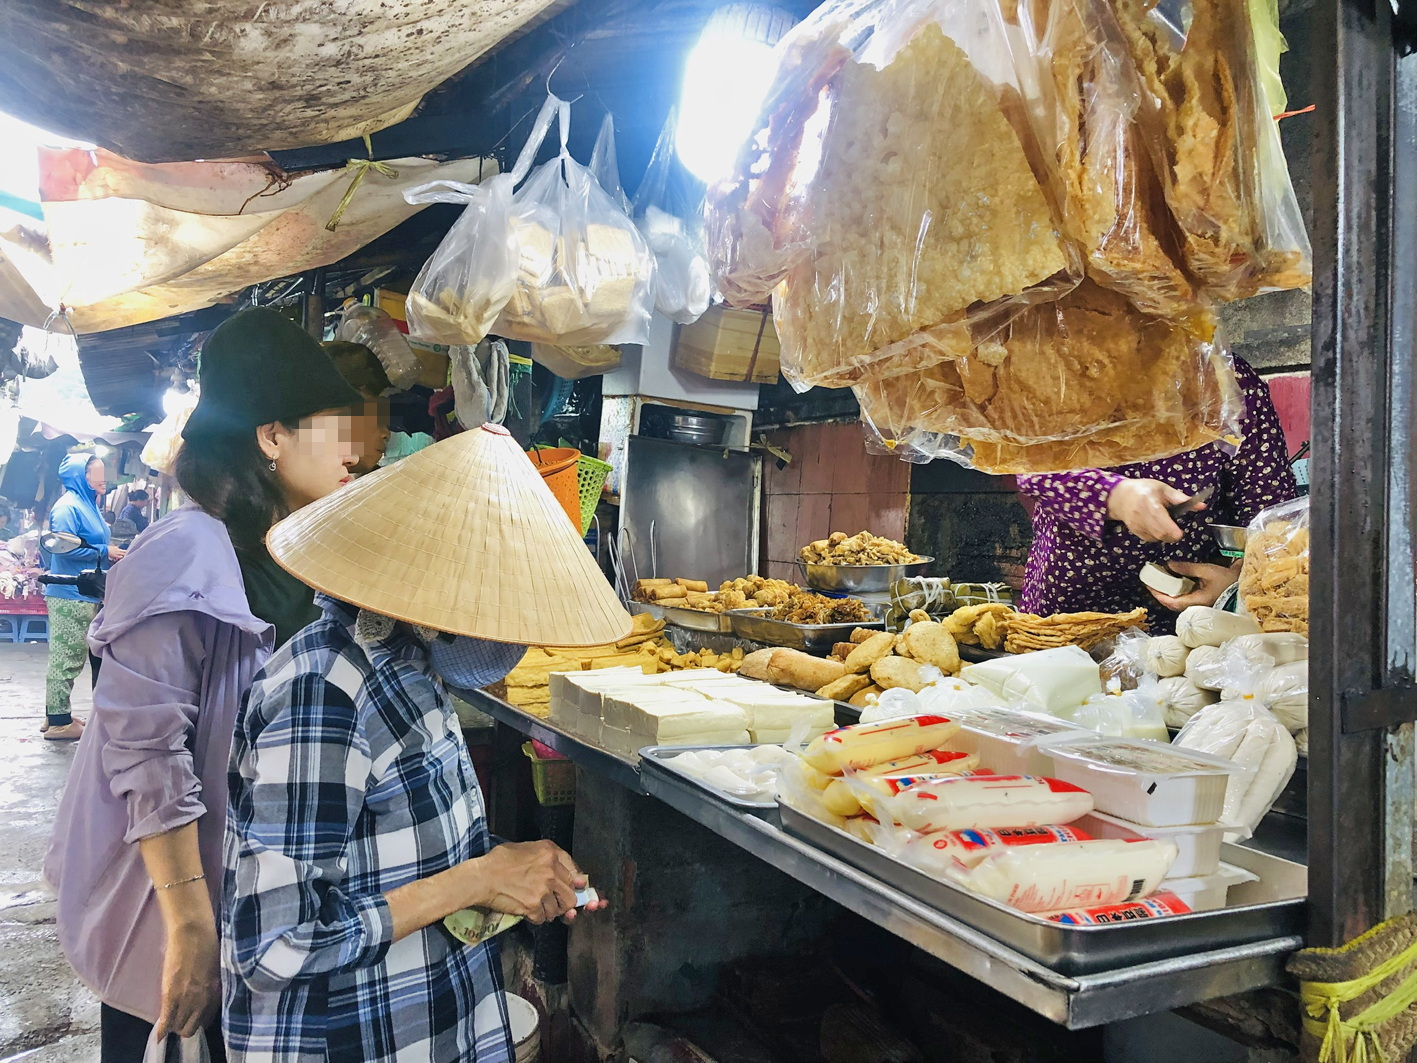 Đồ chay chế biến bày bán ngoài nhiệt độ thường dễ sinh sôi vi khuẩn (chụp tại chợ Thái Bình, quận 1, TPHCM)